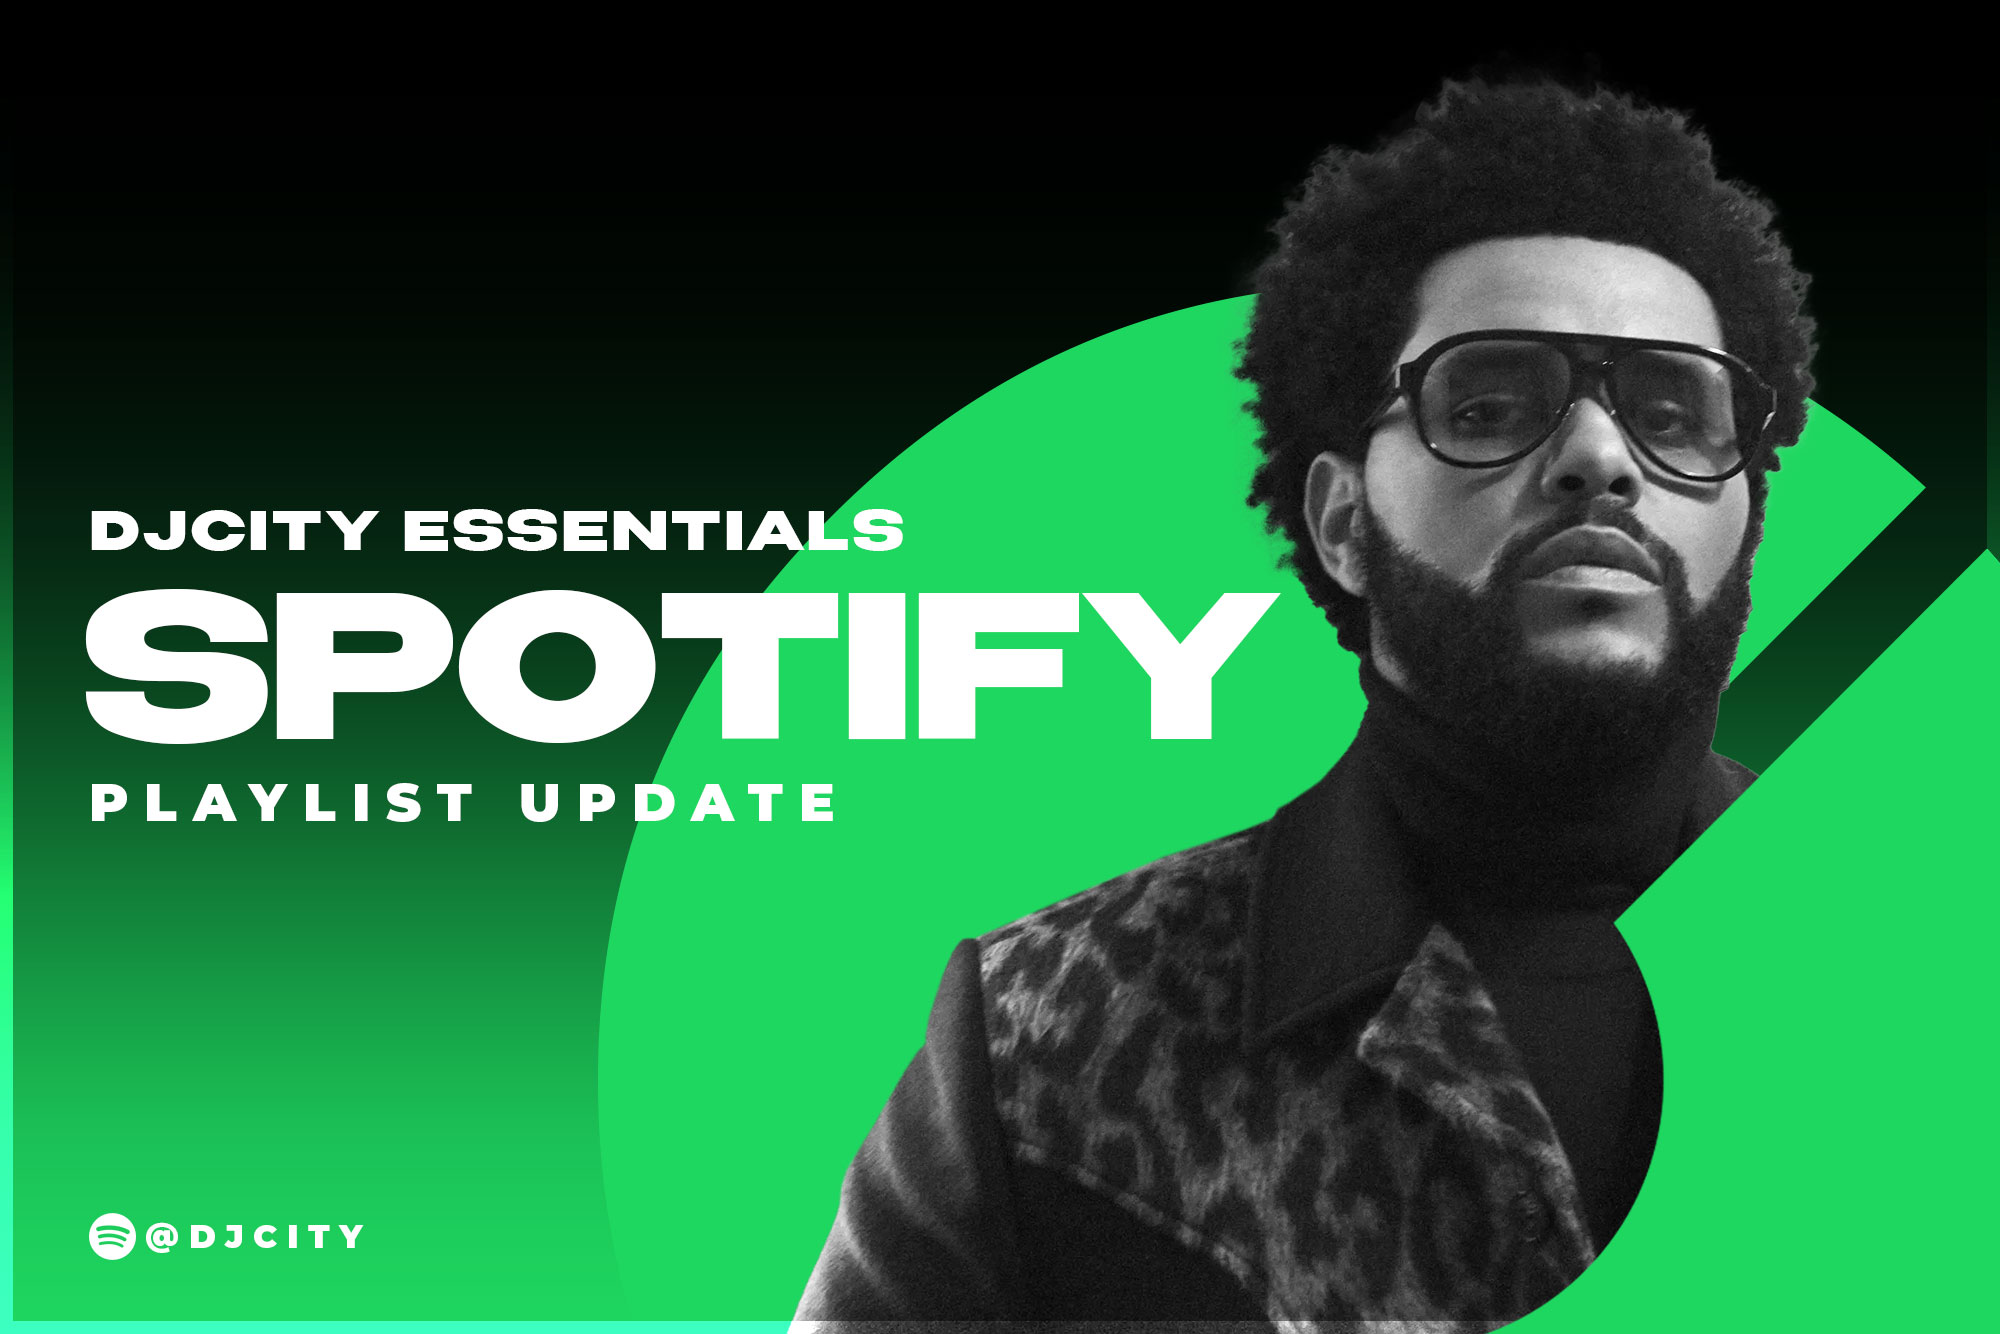 DJcity’s Spotify Playlist Update: Aug. 10